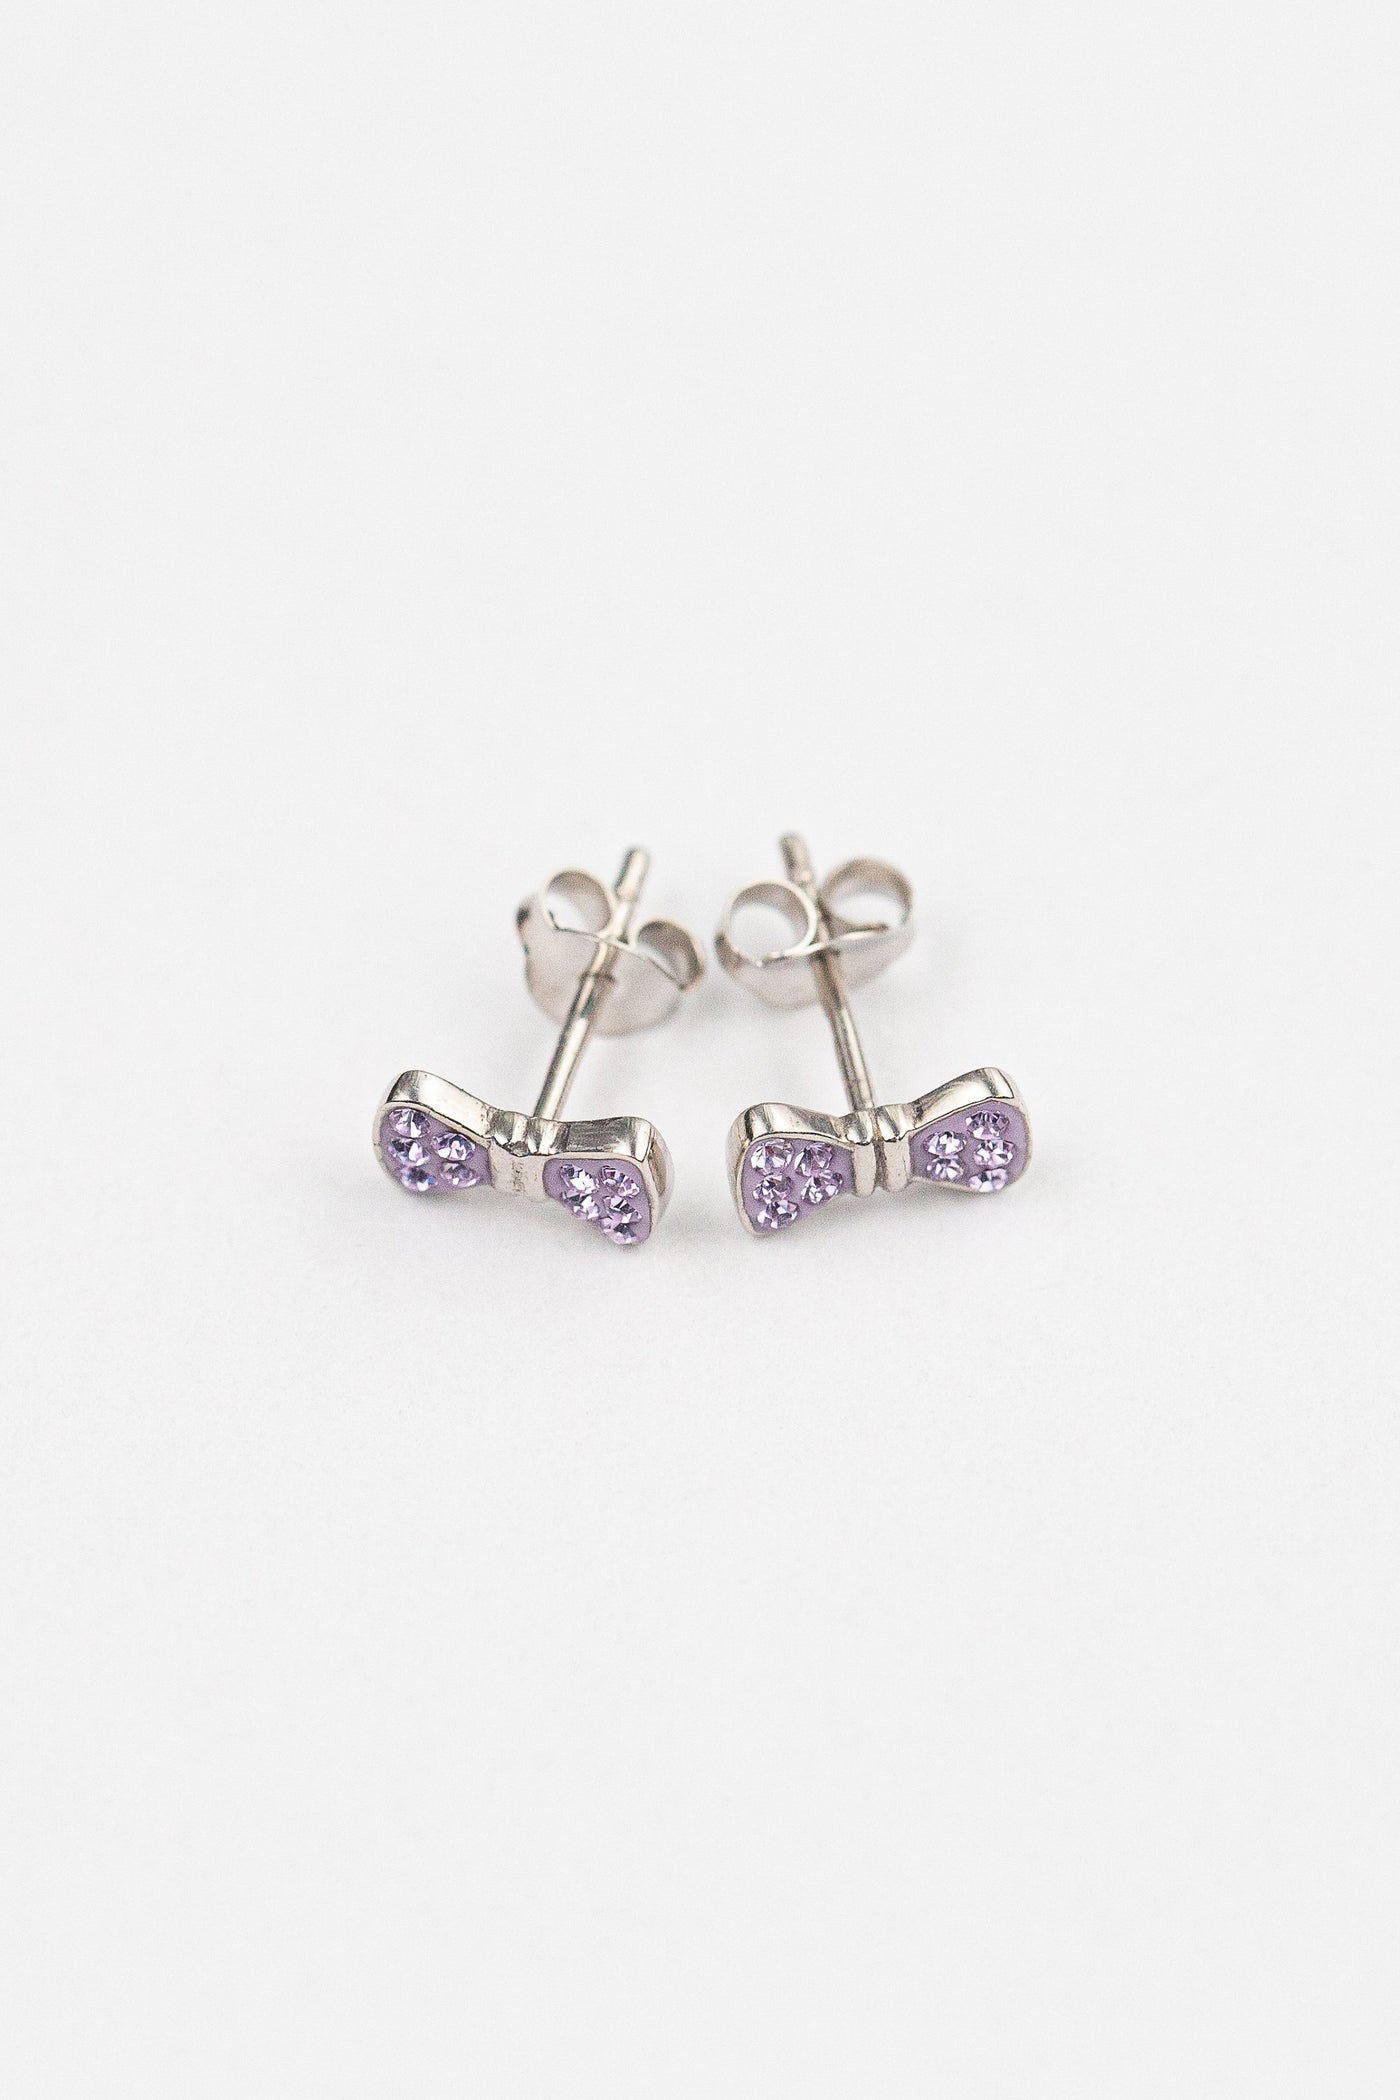 Bow Crystal Silver Stud Earrings in Violet | Annie and Sisters | sister stud earrings, for kids, children's jewelry, kid's jewelry, best friend